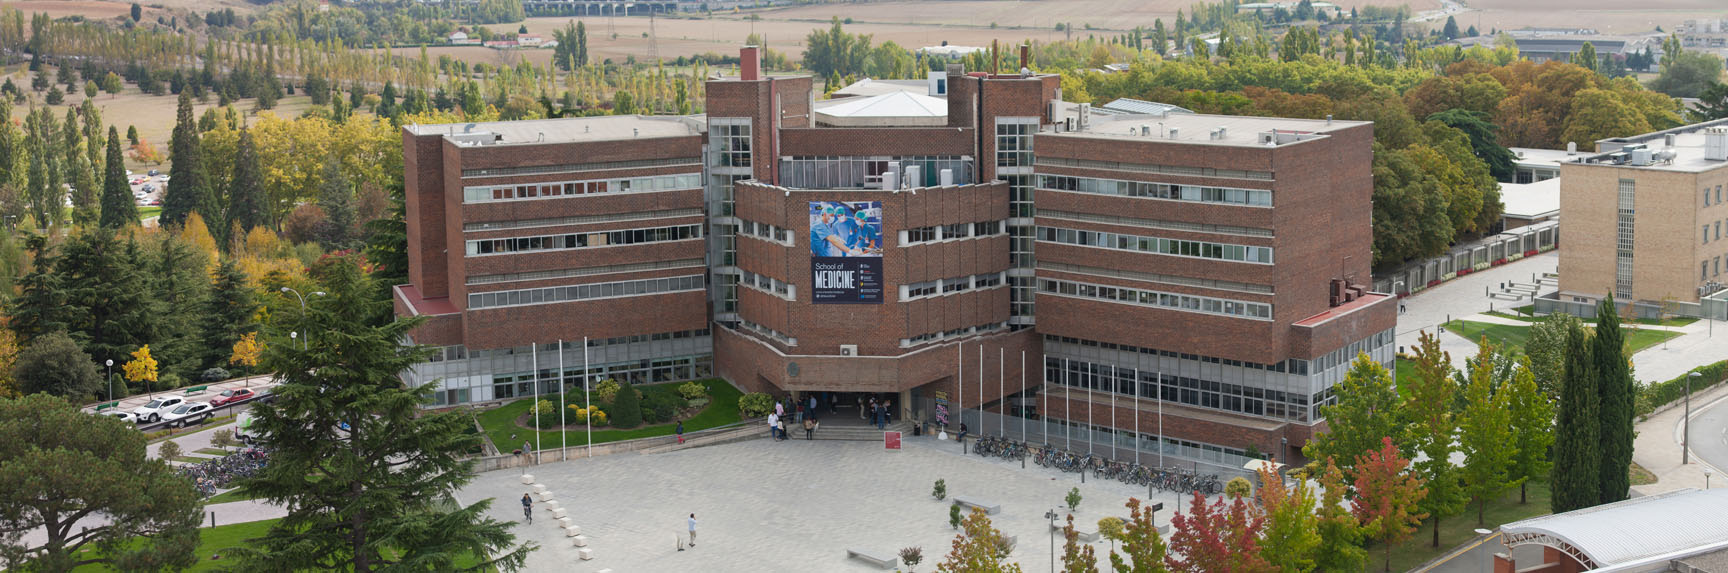 Edificio de Ciencias del campus de Pamplona